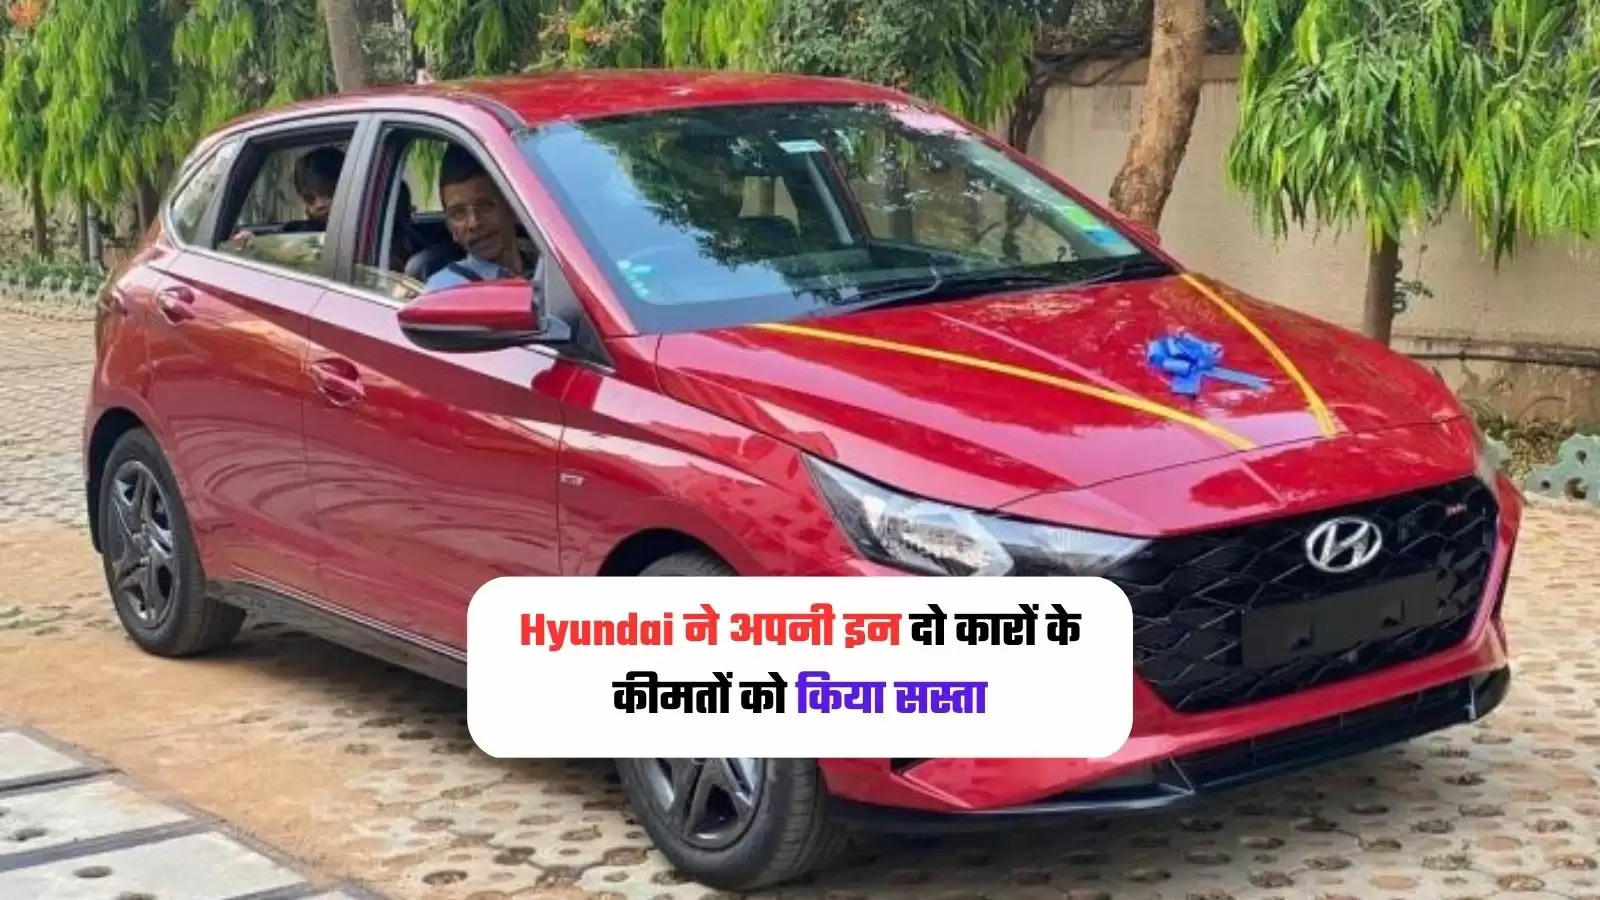 Hyundai: Hyundai 